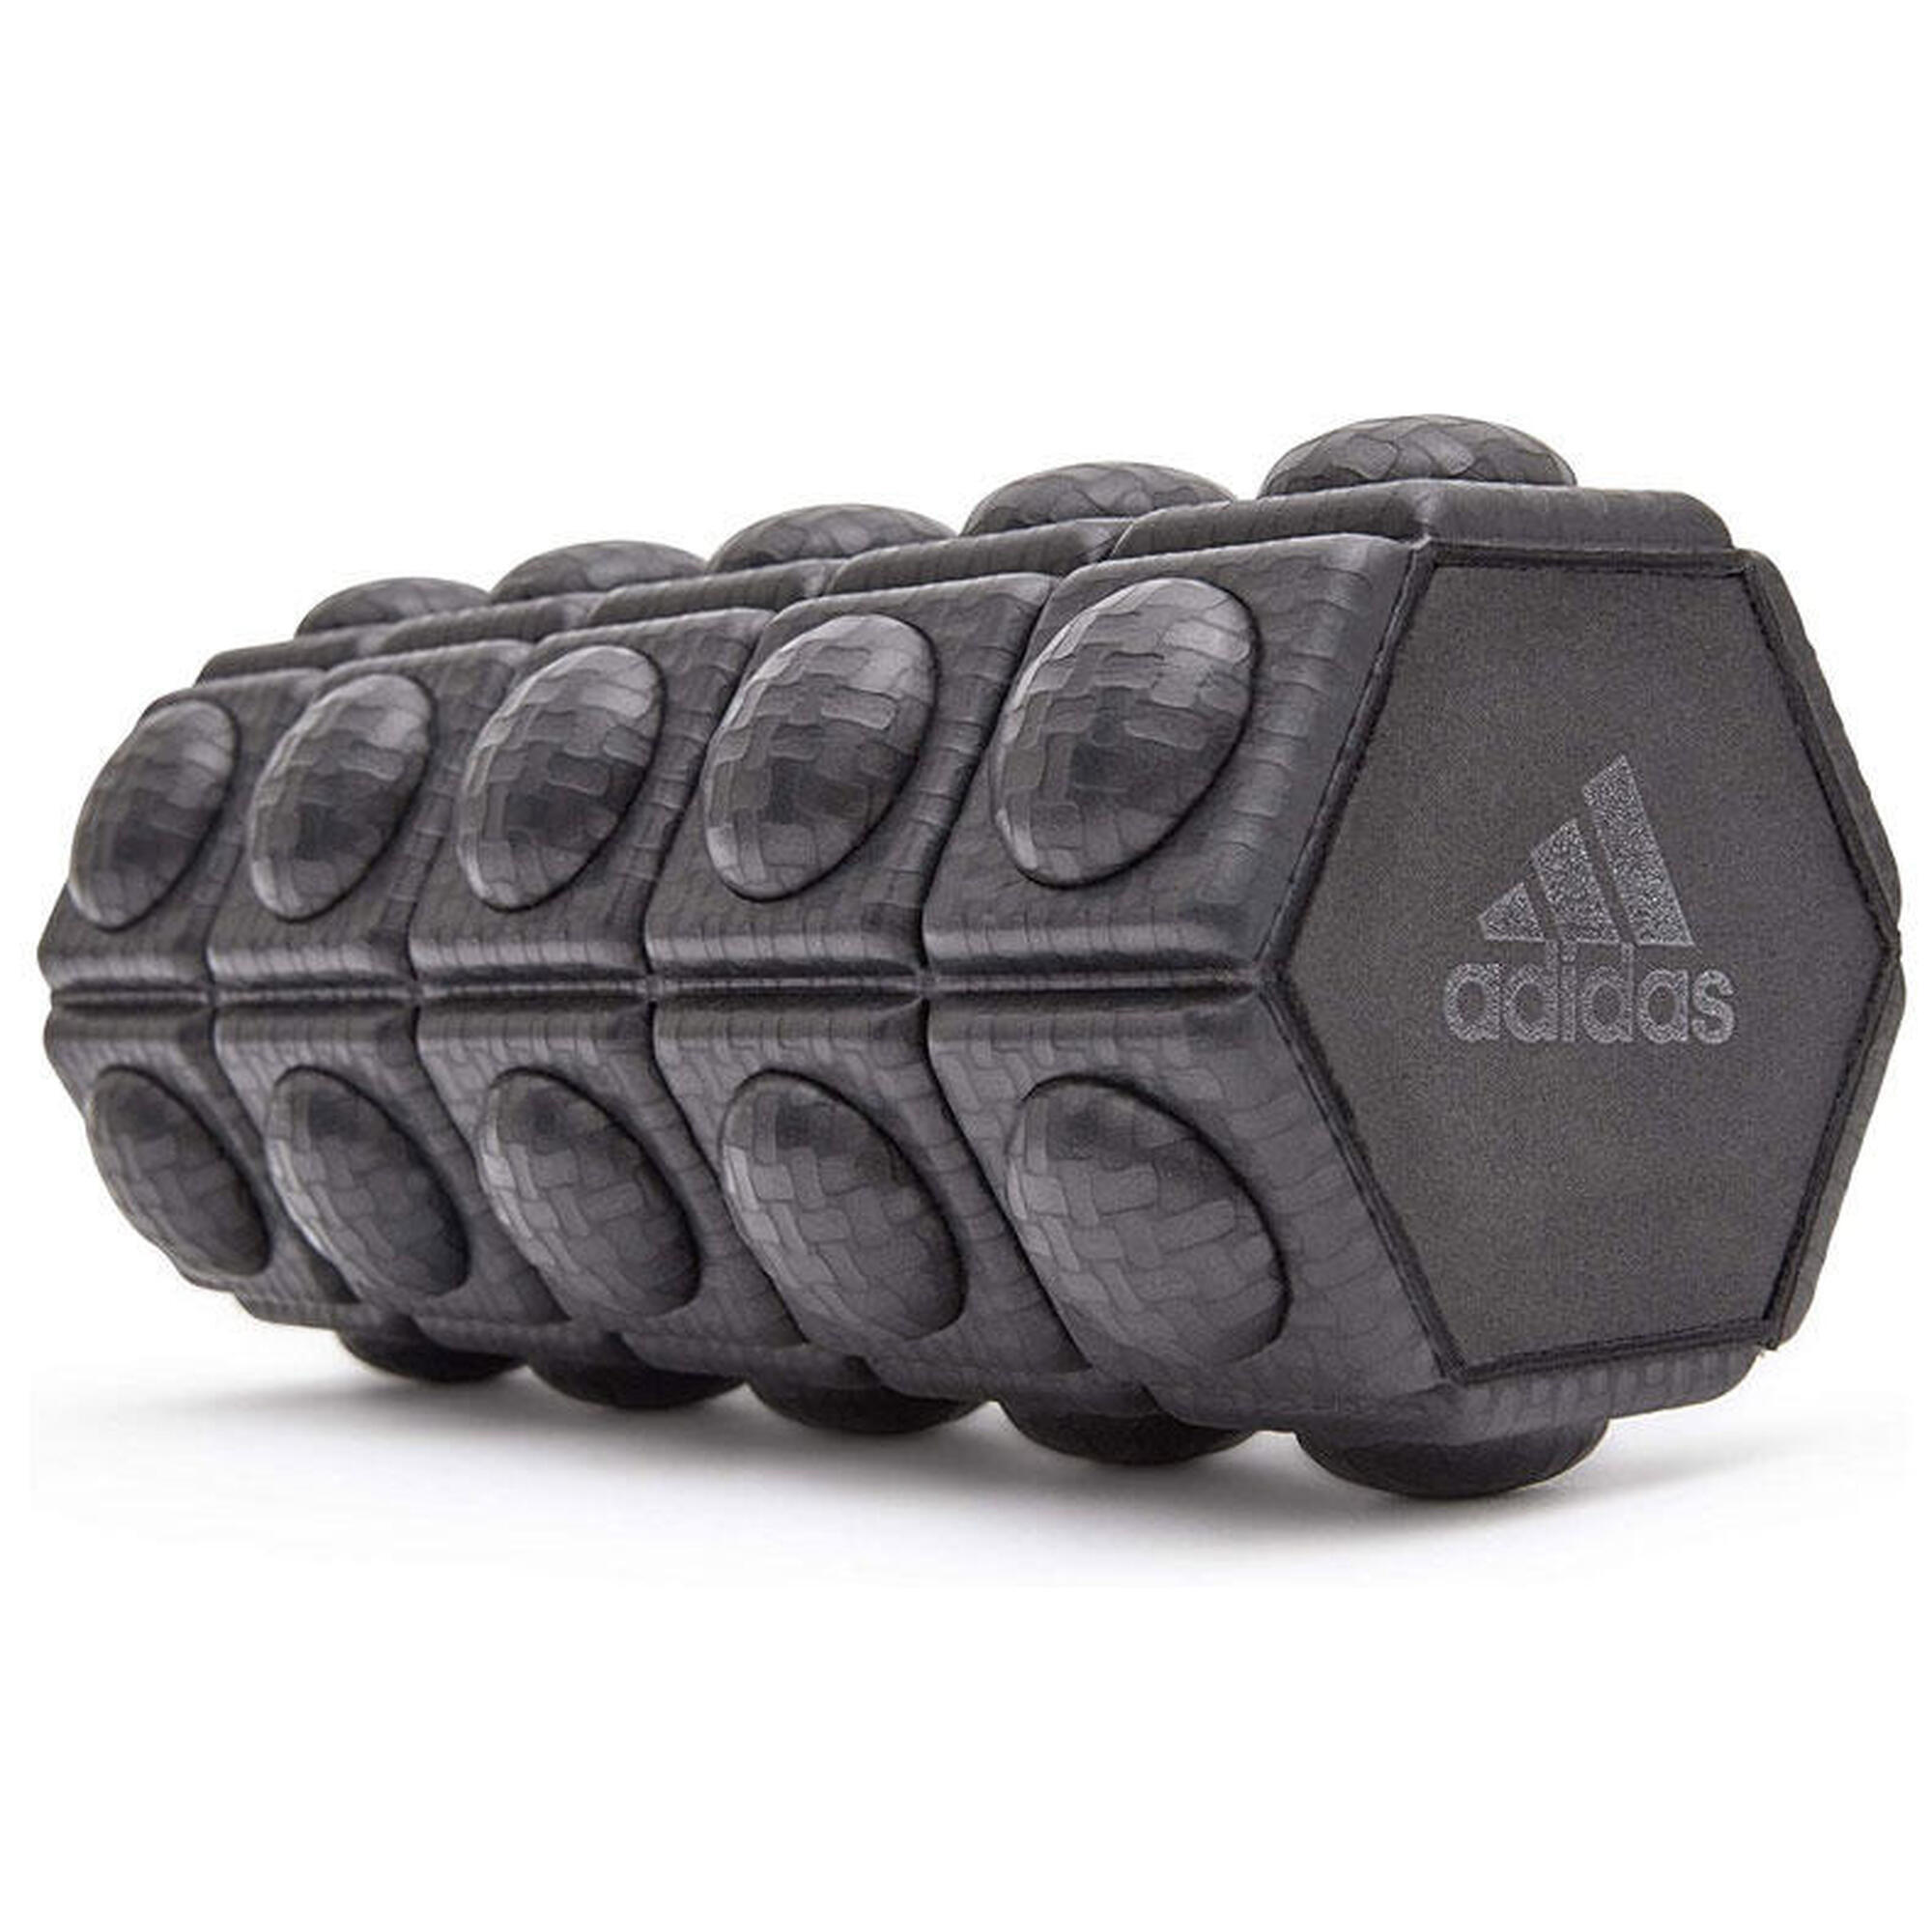 Rouleau de Massage Mousse Adidas Mini - Noir